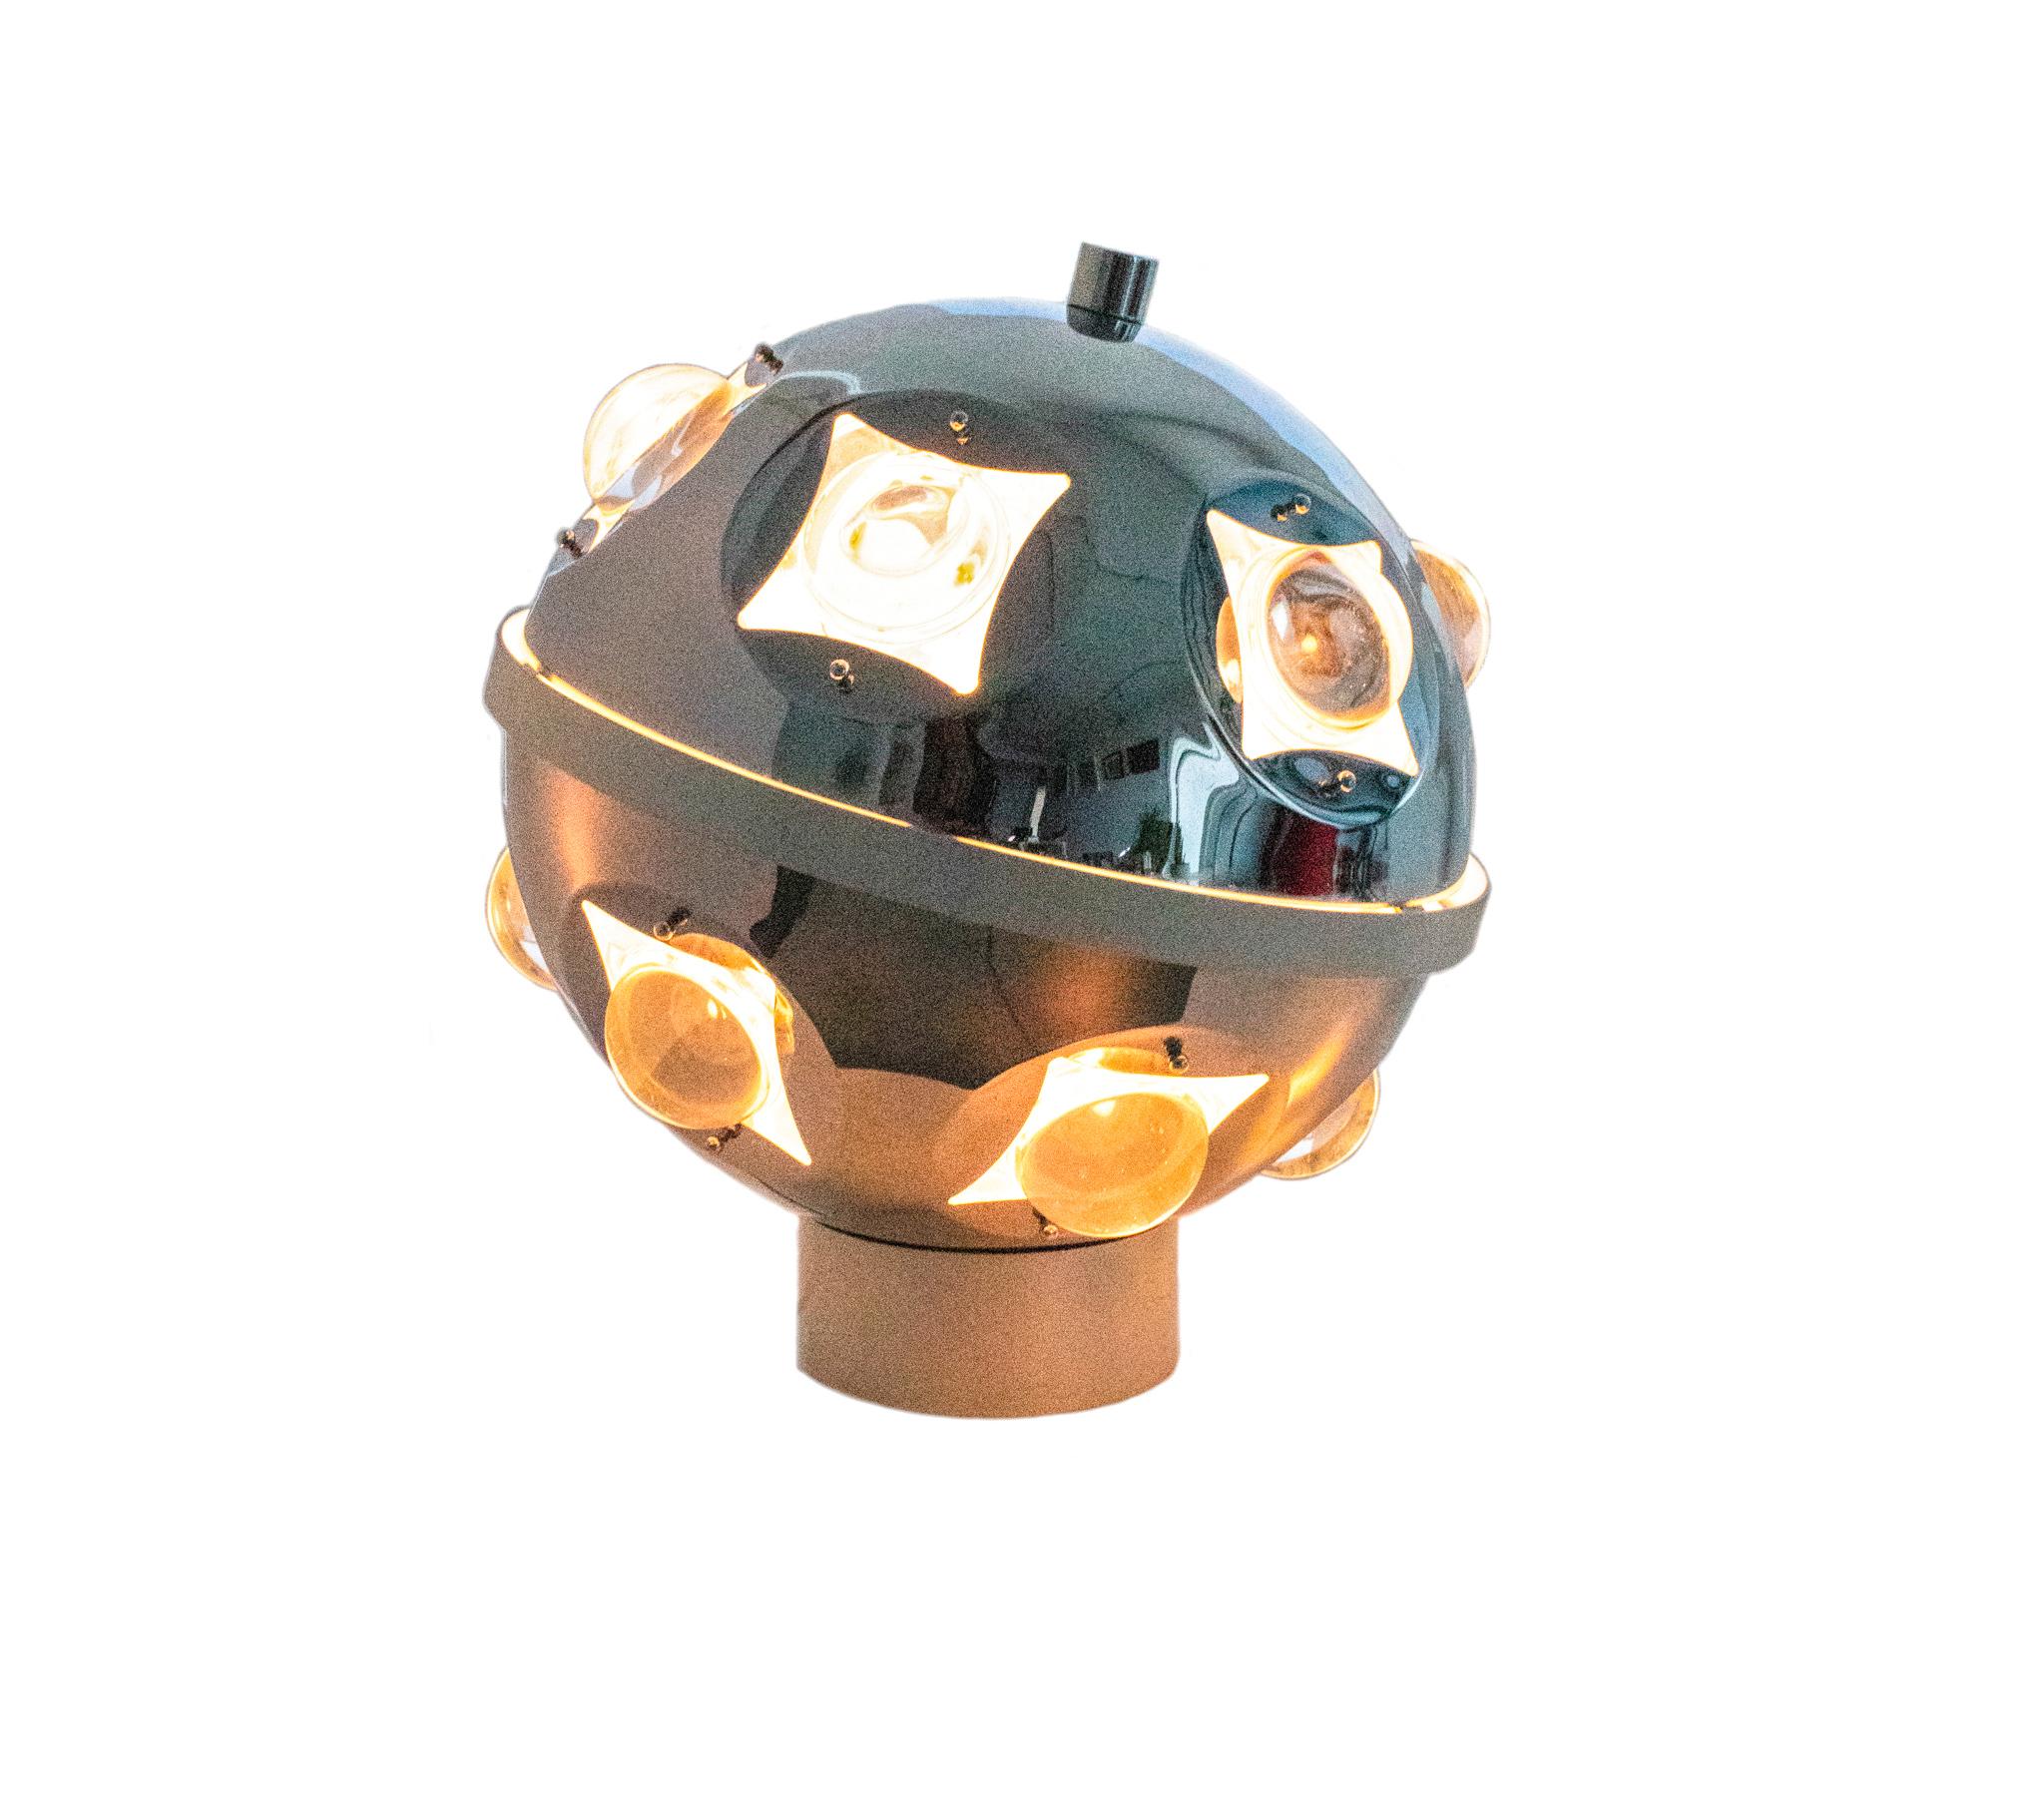 Rarissime lampe de table conçue par Oscar Torlasco pour Stilkronen.

Une lampe de table très originale et futuriste, datant de l'ère spatiale, conçue par Oscar Torlasco pour le groupe Stilkronen en Italie. Conçue dans les années 1960, elle est